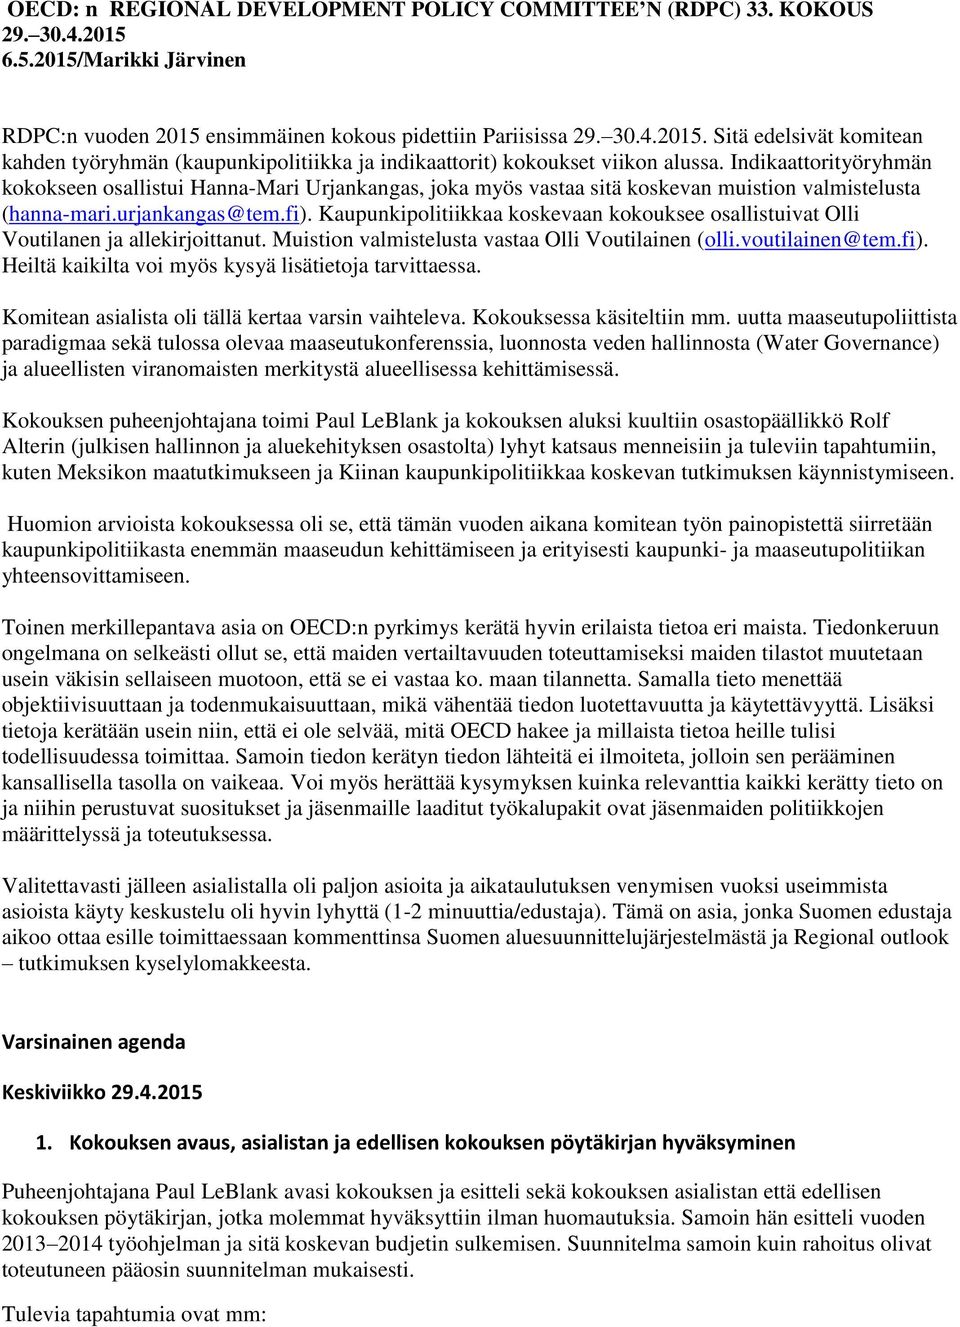 Kaupunkipolitiikkaa koskevaan kokouksee osallistuivat Olli Voutilanen ja allekirjoittanut. Muistion valmistelusta vastaa Olli Voutilainen (olli.voutilainen@tem.fi).